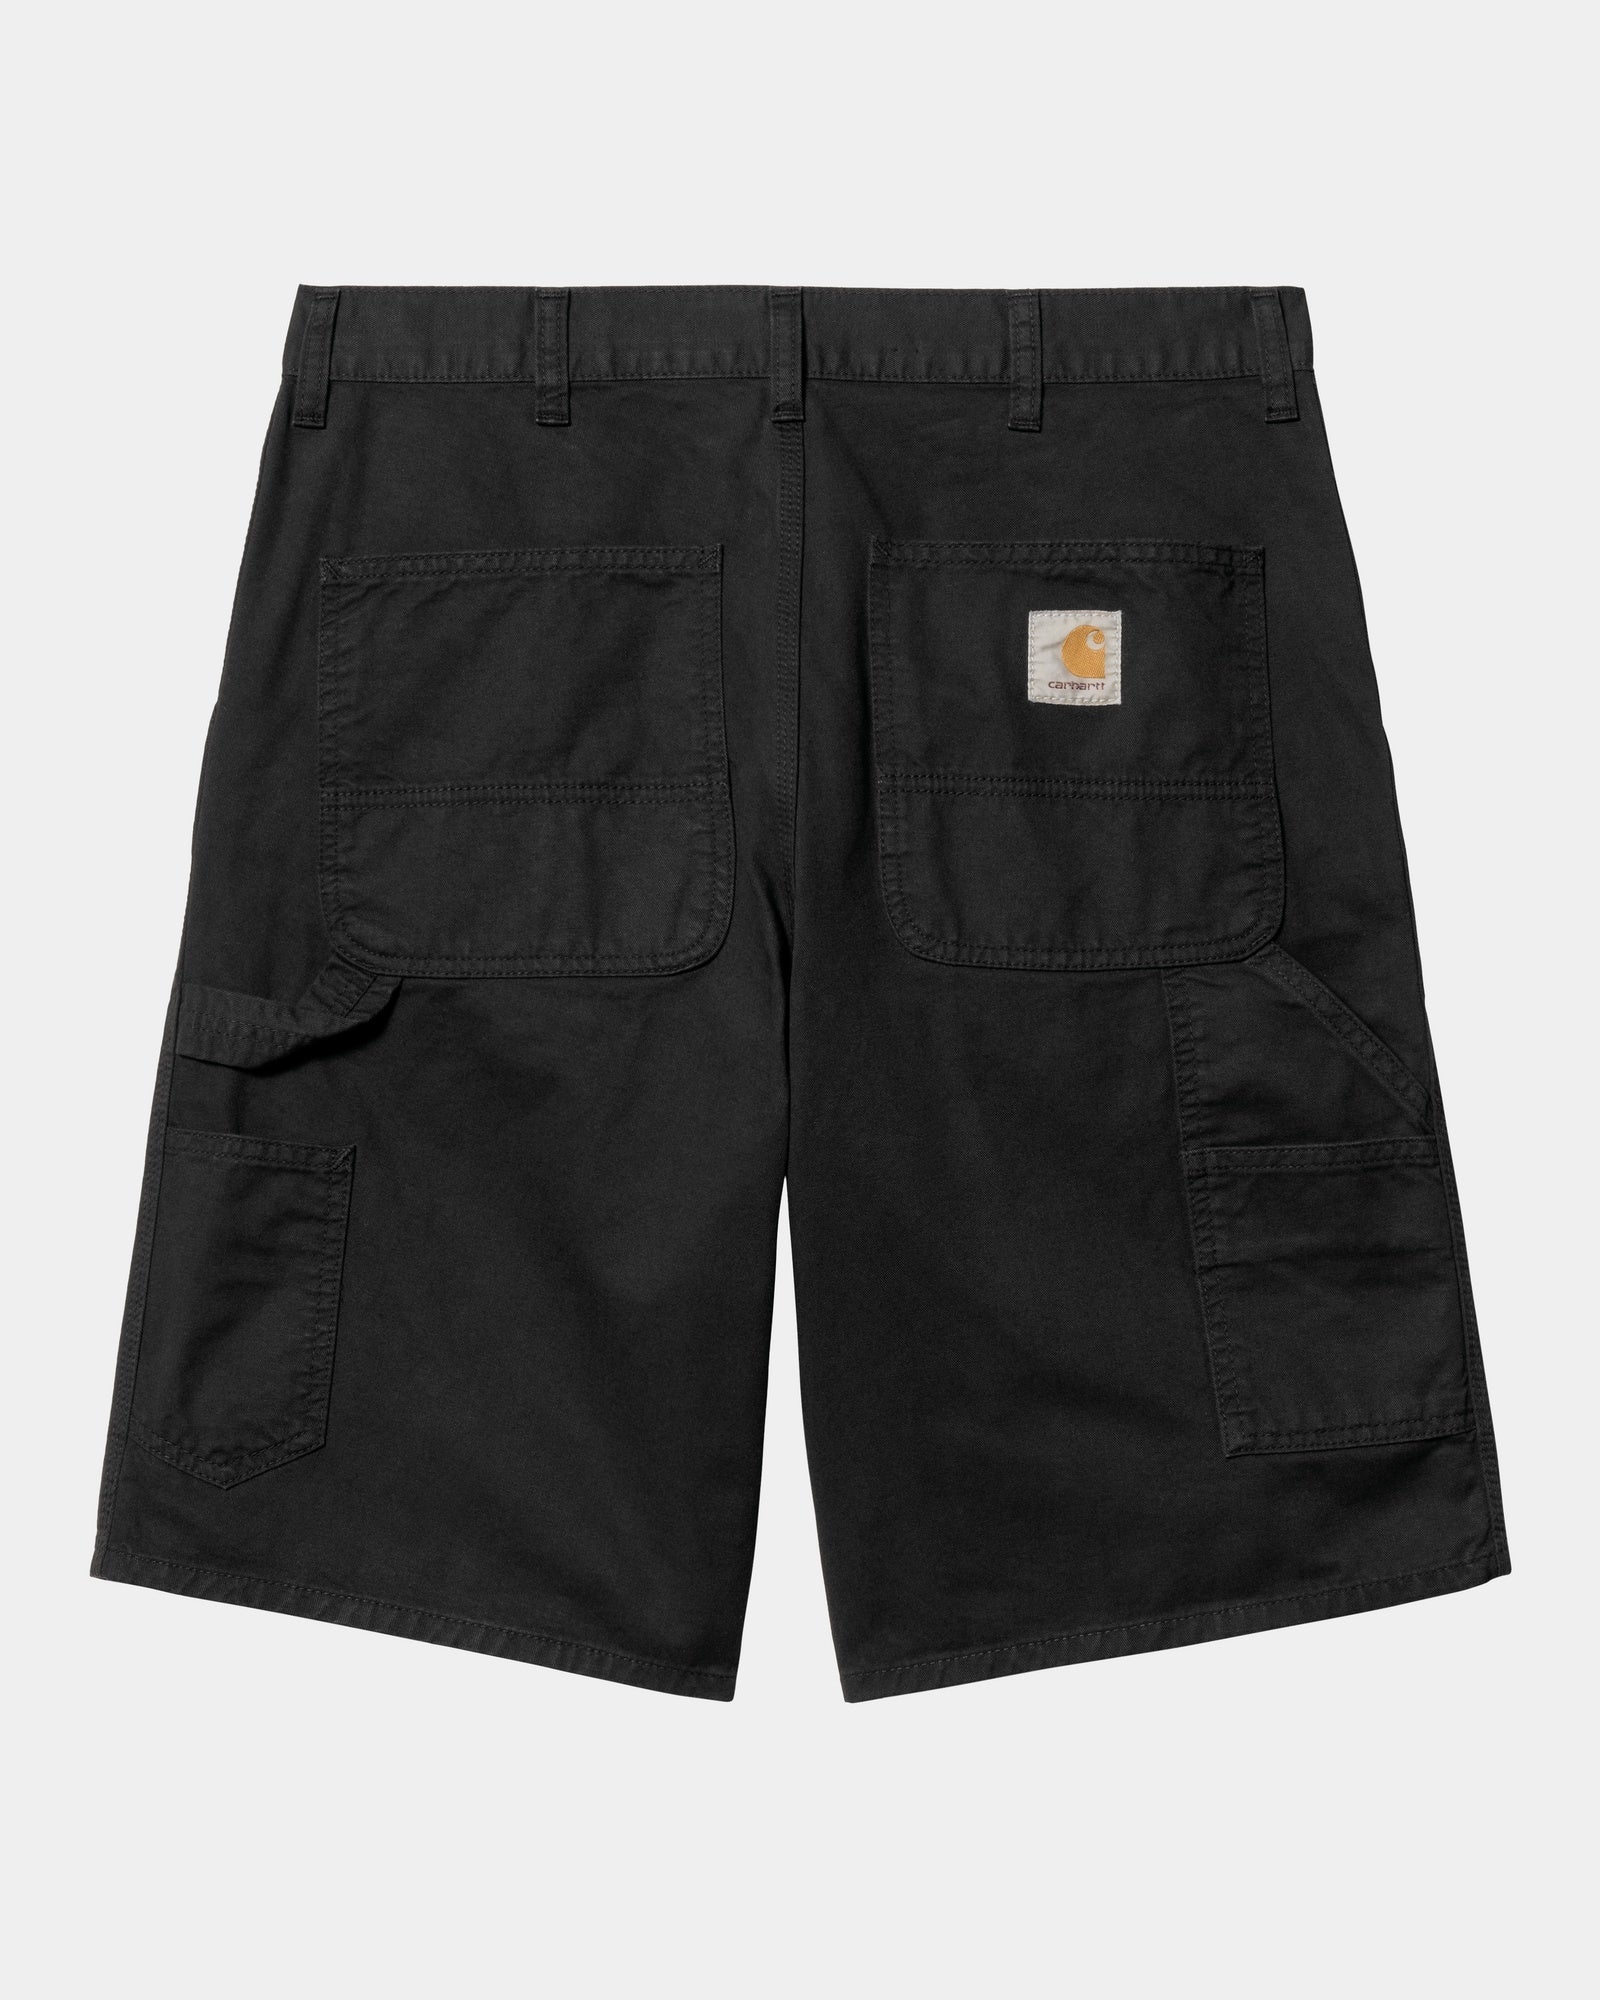 칼하트WIP Carhartt Single Knee Short - Drill,Black garment dyed